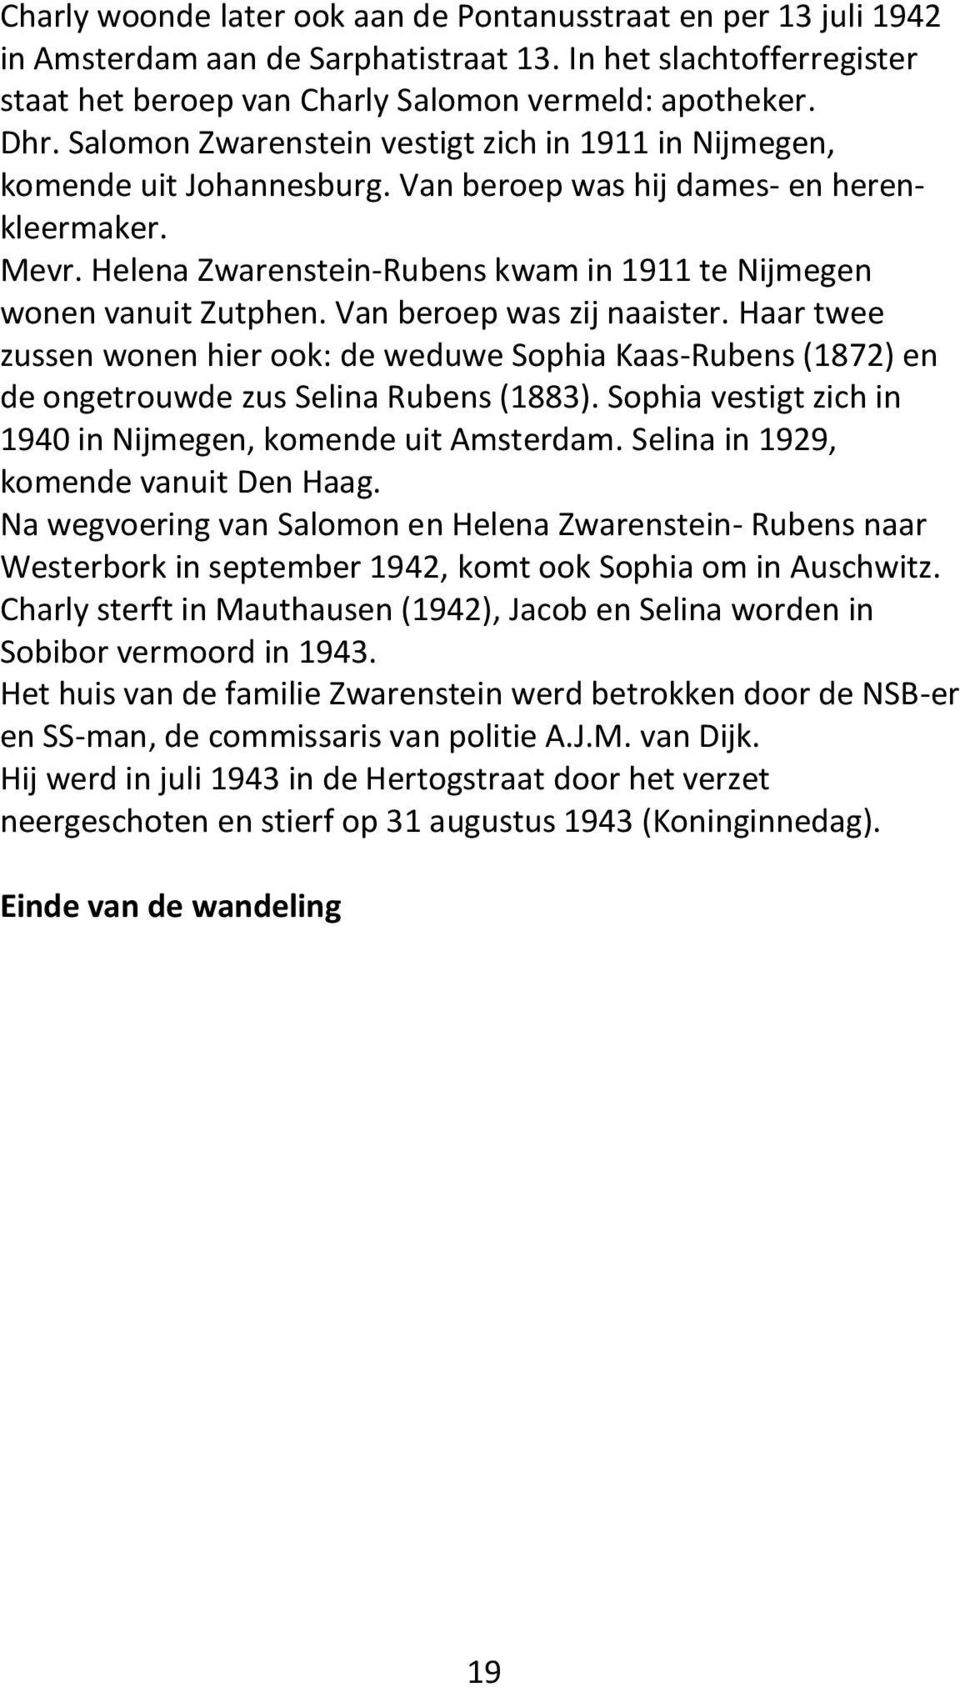 Helena Zwarenstein-Rubens kwam in 1911 te Nijmegen wonen vanuit Zutphen. Van beroep was zij naaister.